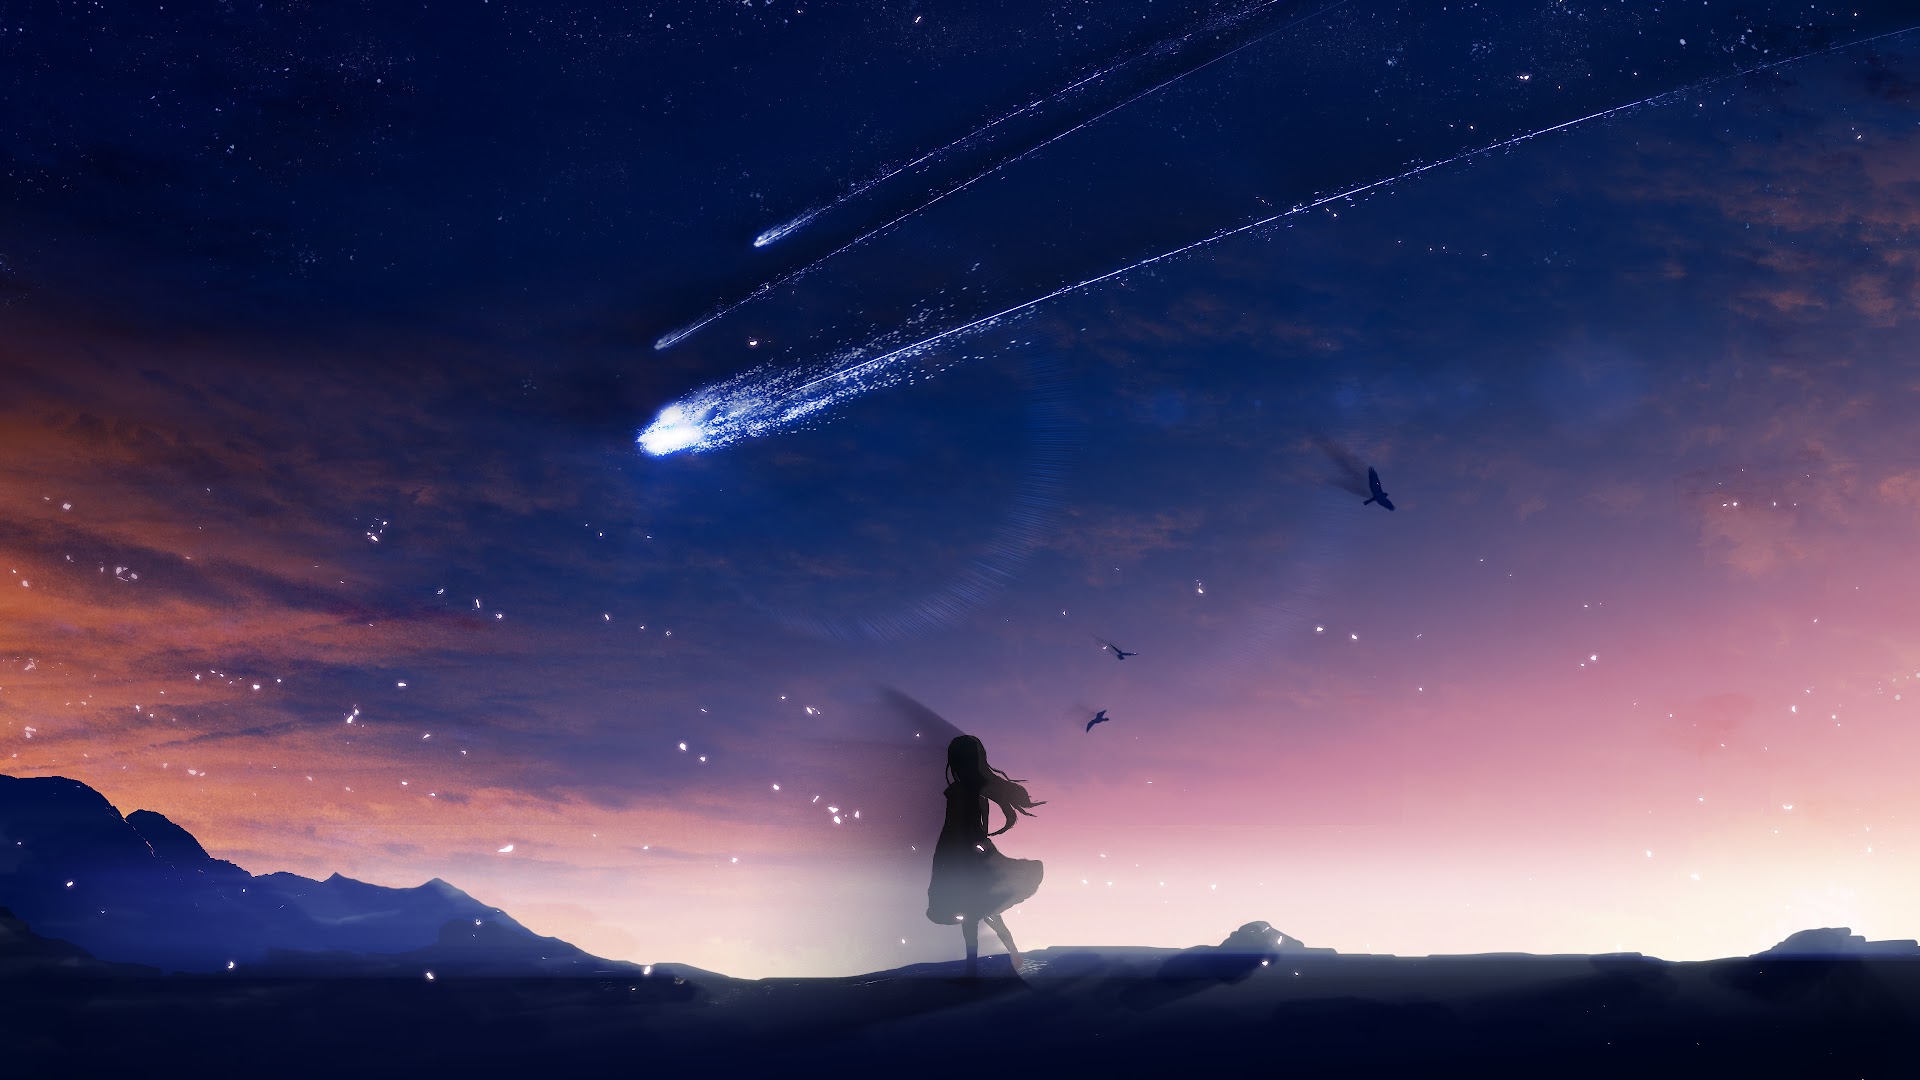 Comet: Những tia sáng lung linh của sao chổi khiến tôi thực sự cảm thấy được chứng kiến một hiện tượng thiên nhiên độc đáo và kỳ diệu. Hãy xem ảnh để được ngắm nhìn vẻ đẹp của chiếc sao chổi.